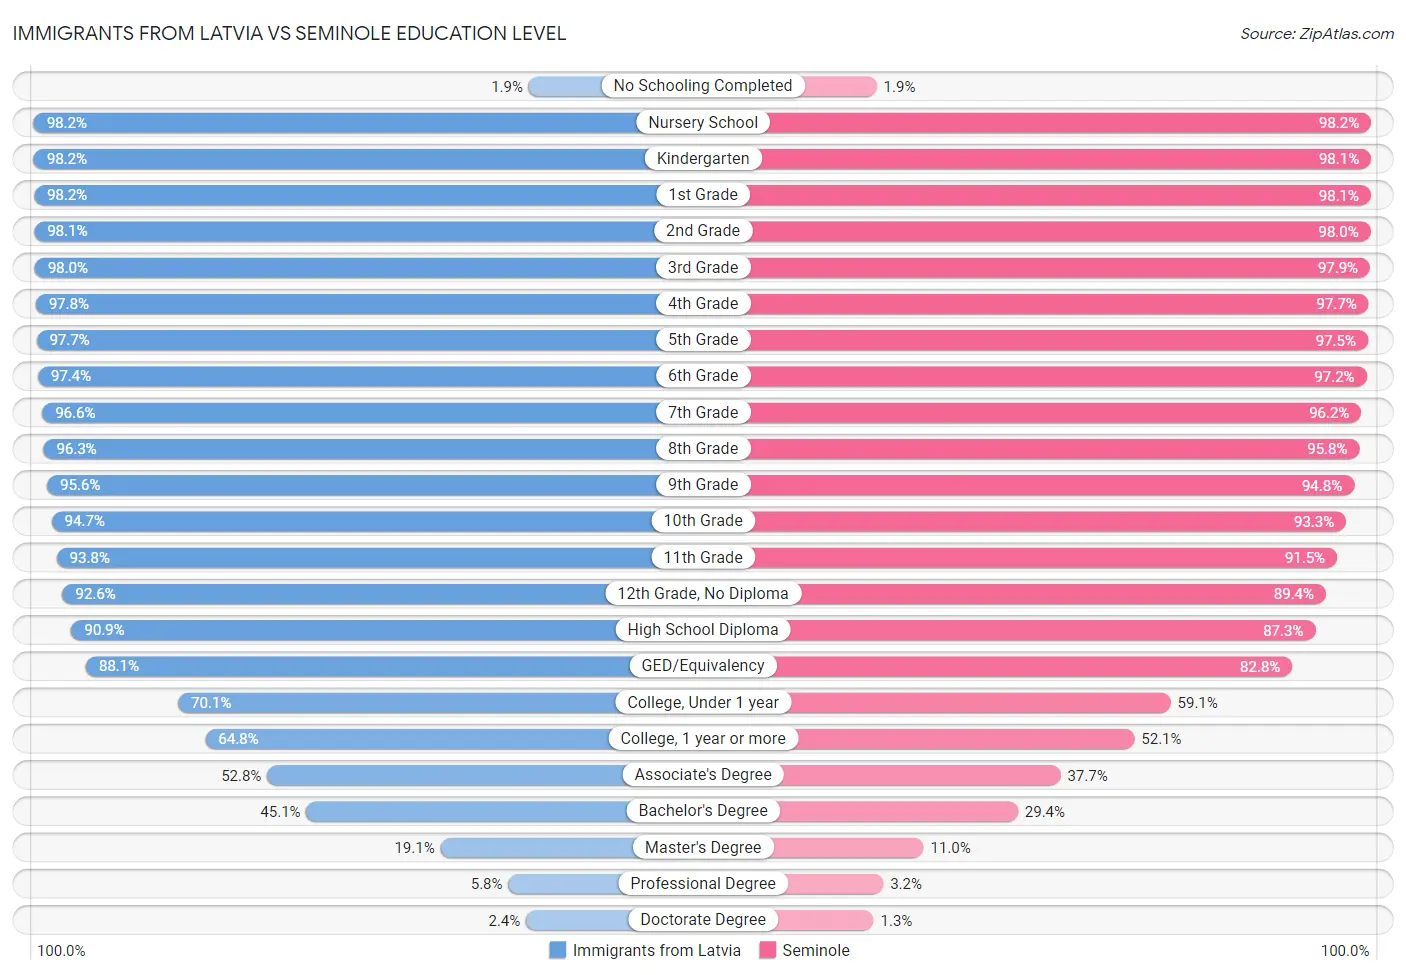 Immigrants from Latvia vs Seminole Education Level